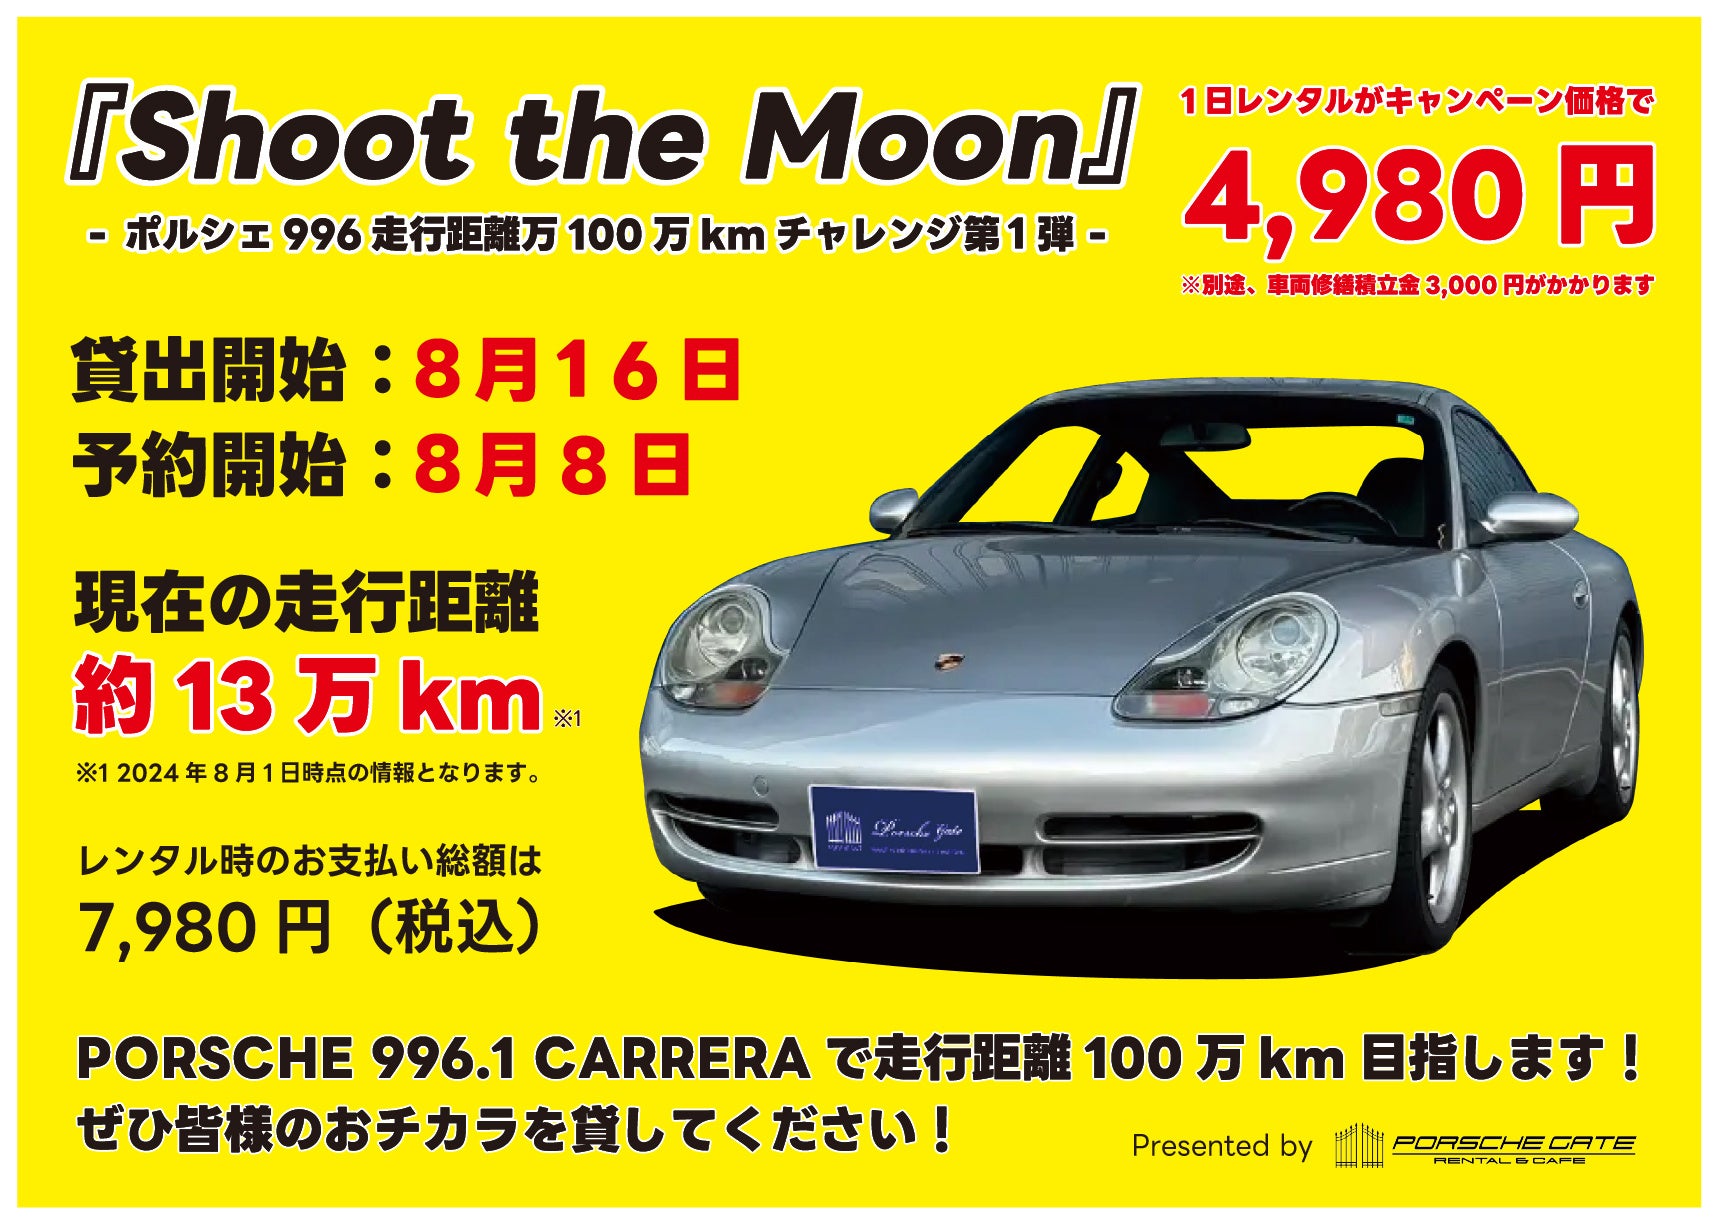 【Shoot the Moon Challenge】ポルシェ996の走行距離を100万kmするチャレンジを行います